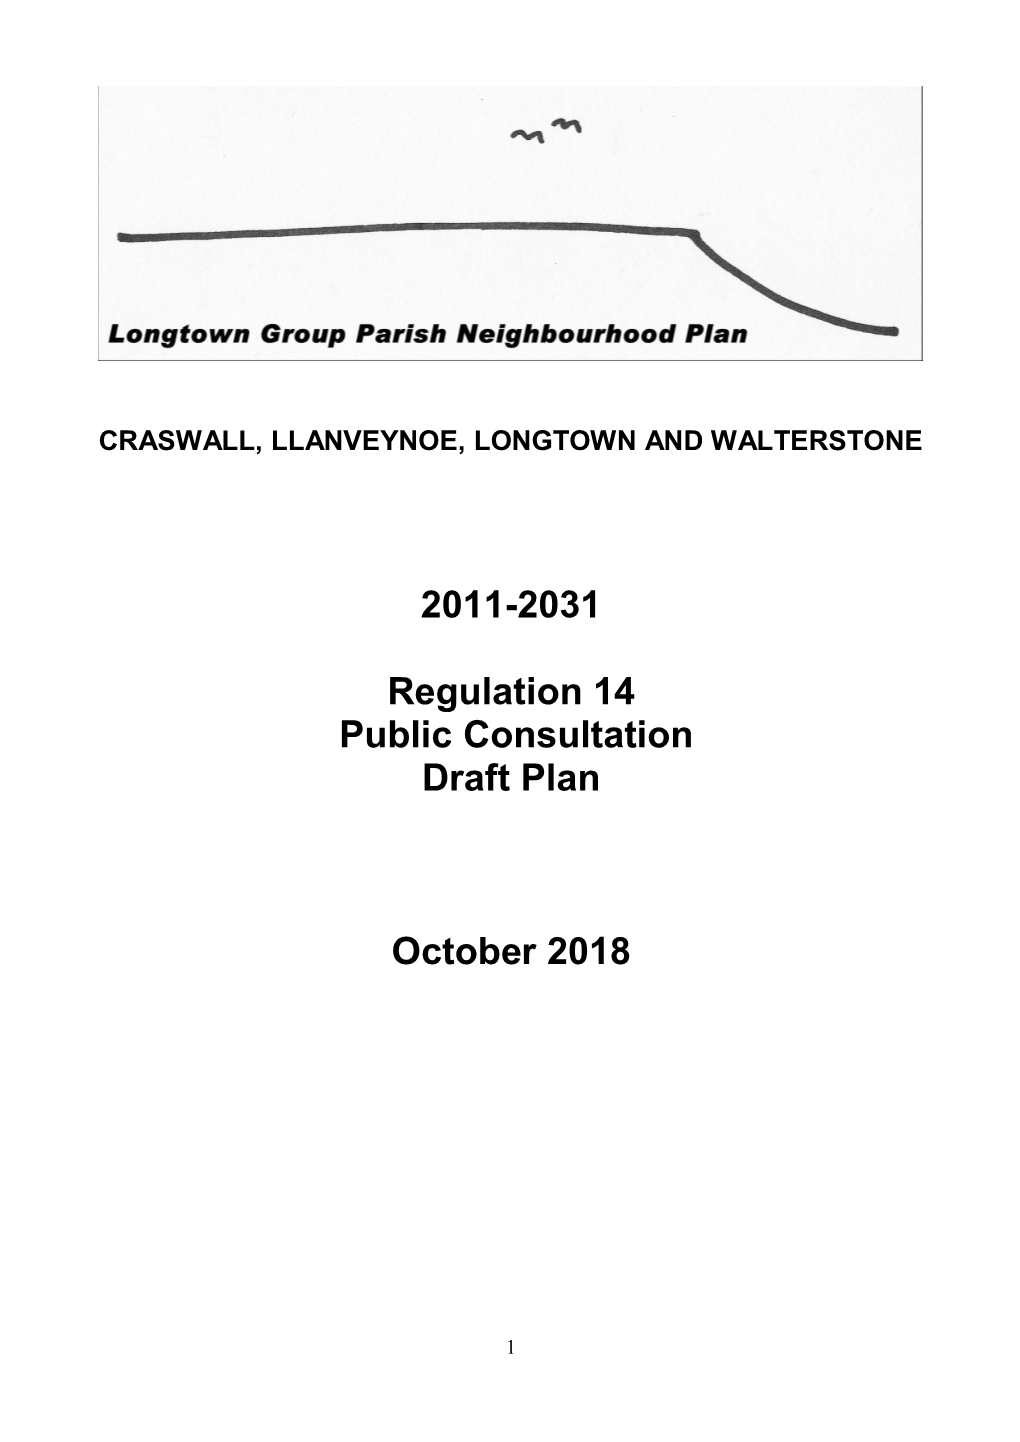 Longtown Group Neighbourhood Development Plan October 2018